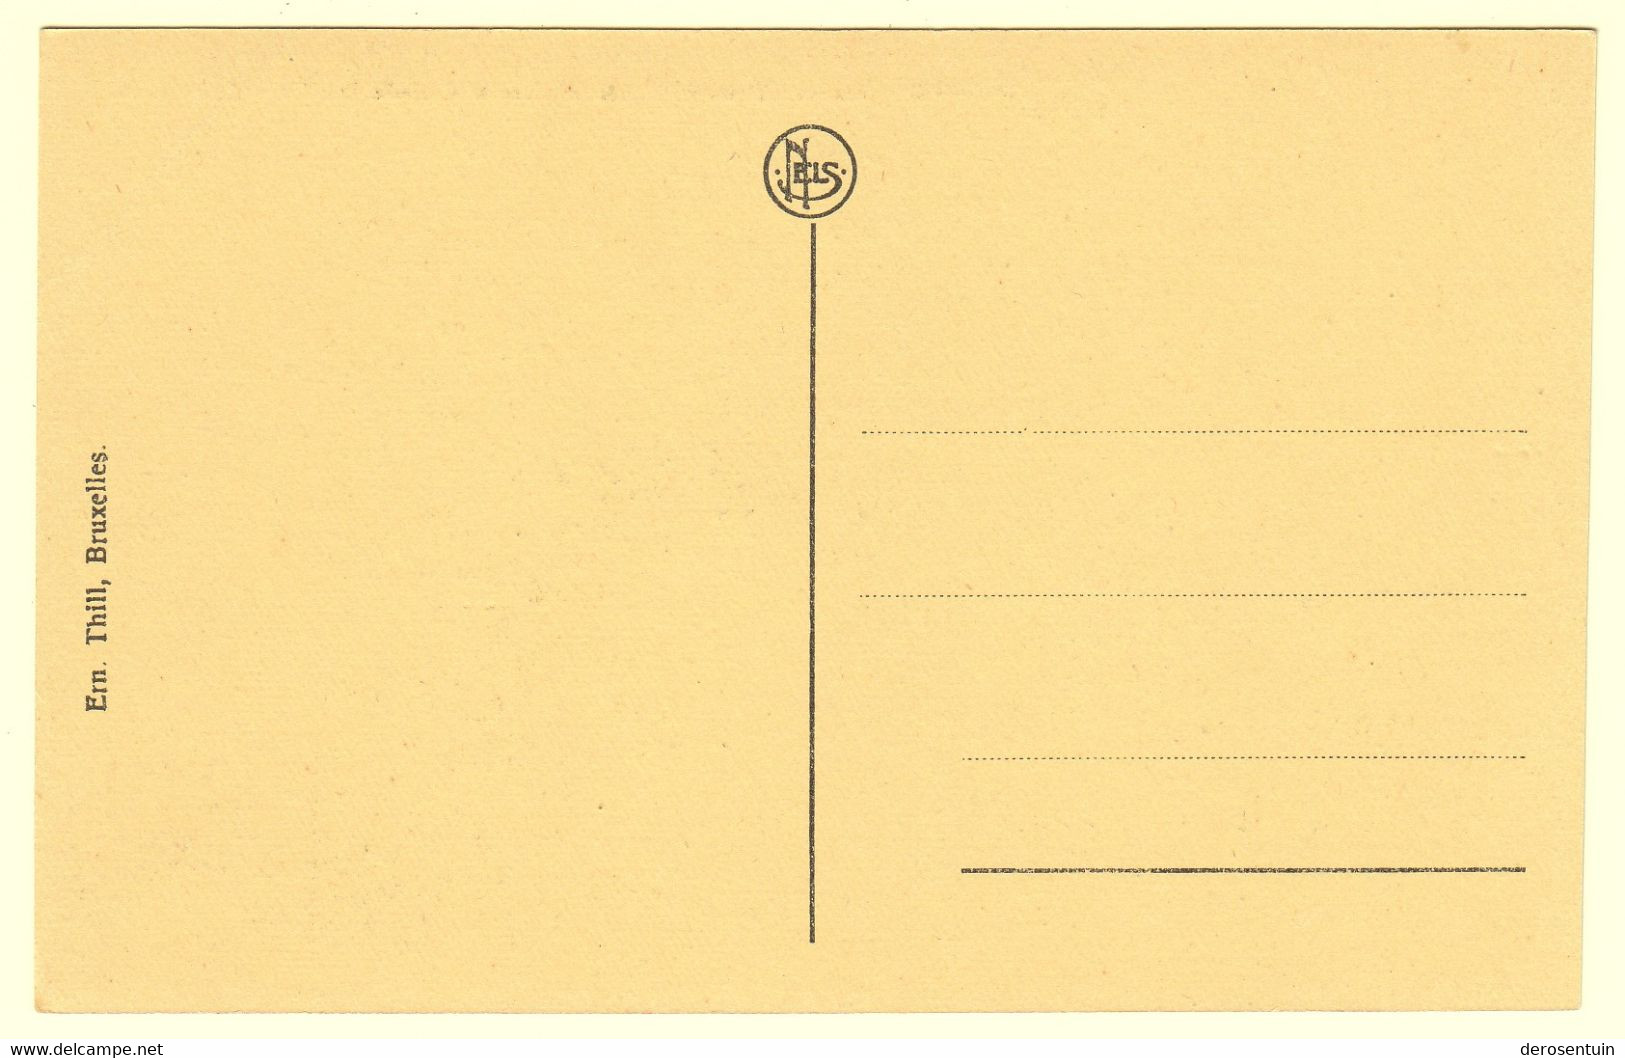 a0004	[Postkaarten] Leuven / Heverlee (gevarieerd lot). - Lot van 70 postkaarten (waarvan 49 r/v gescand), klein formaat